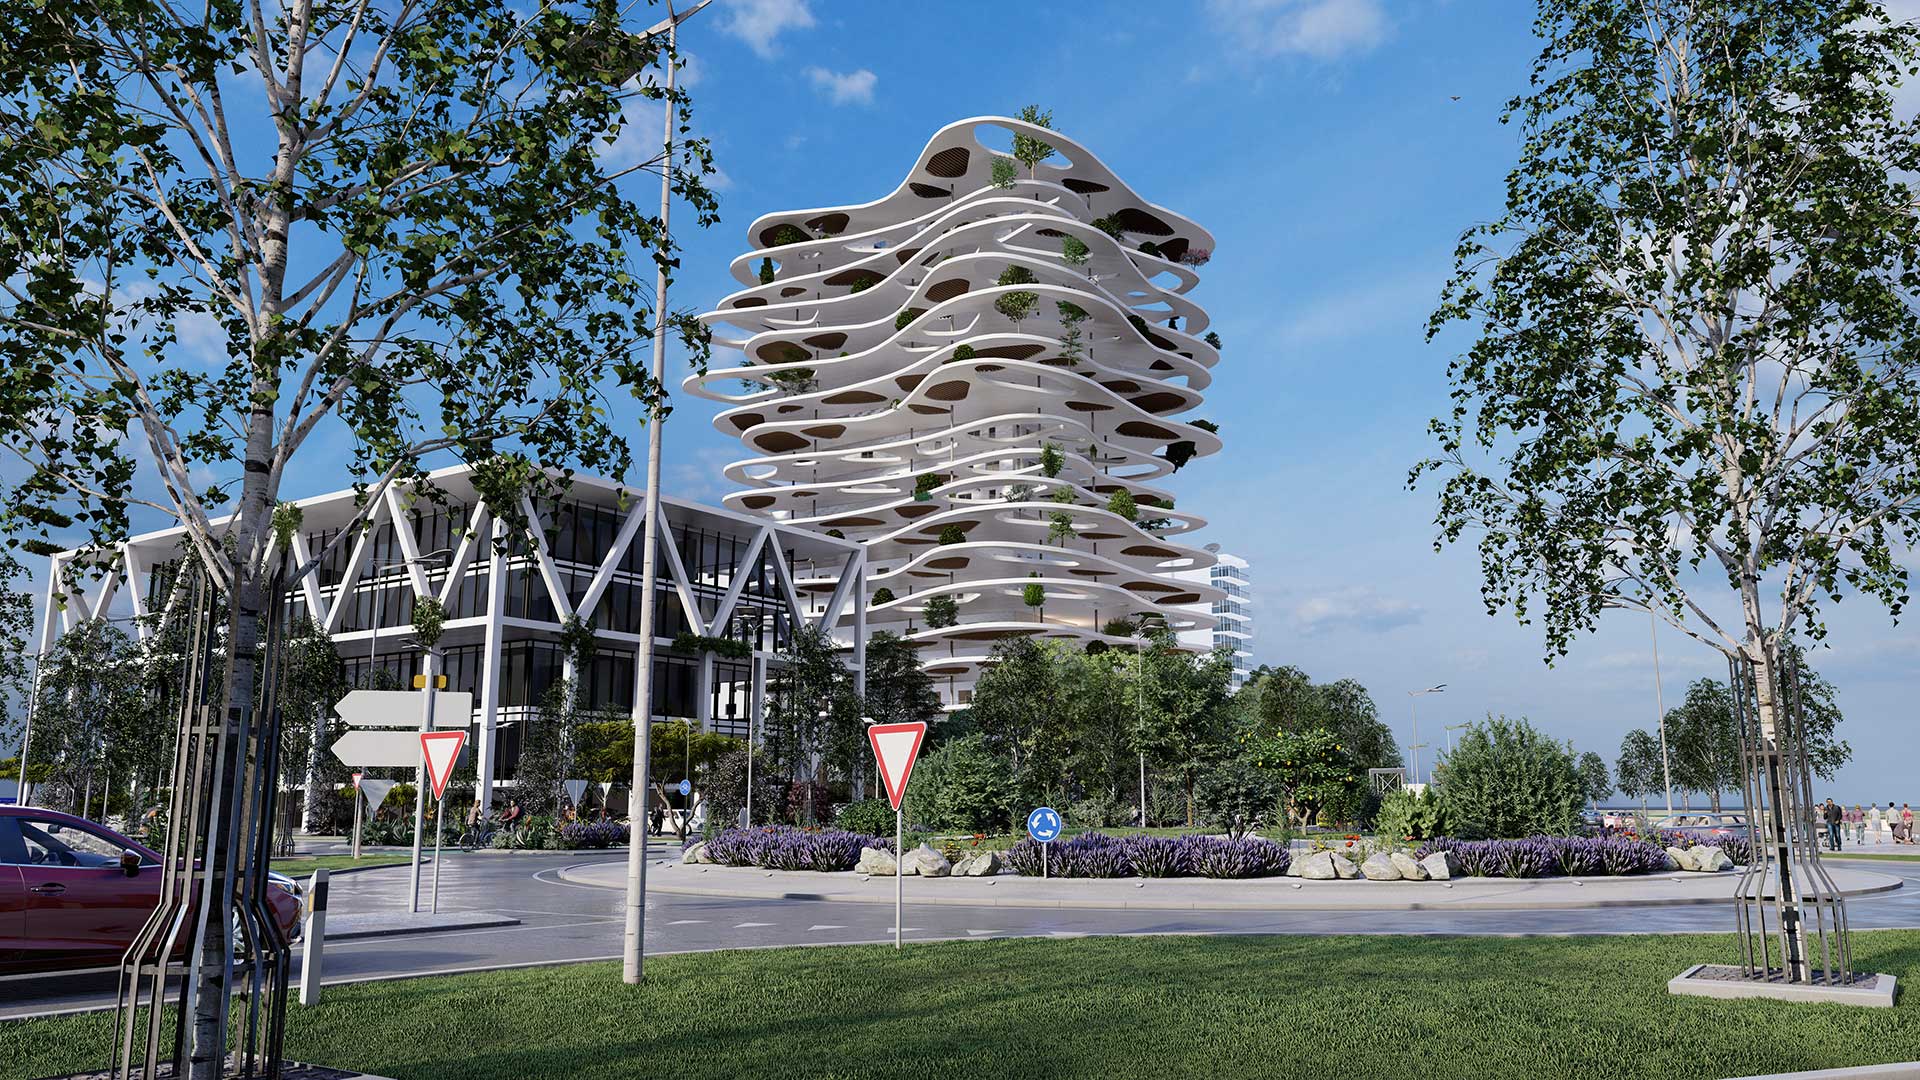 Architectes-Collectivites-projet-aménagement-urbain-perspective-3D-rond-point